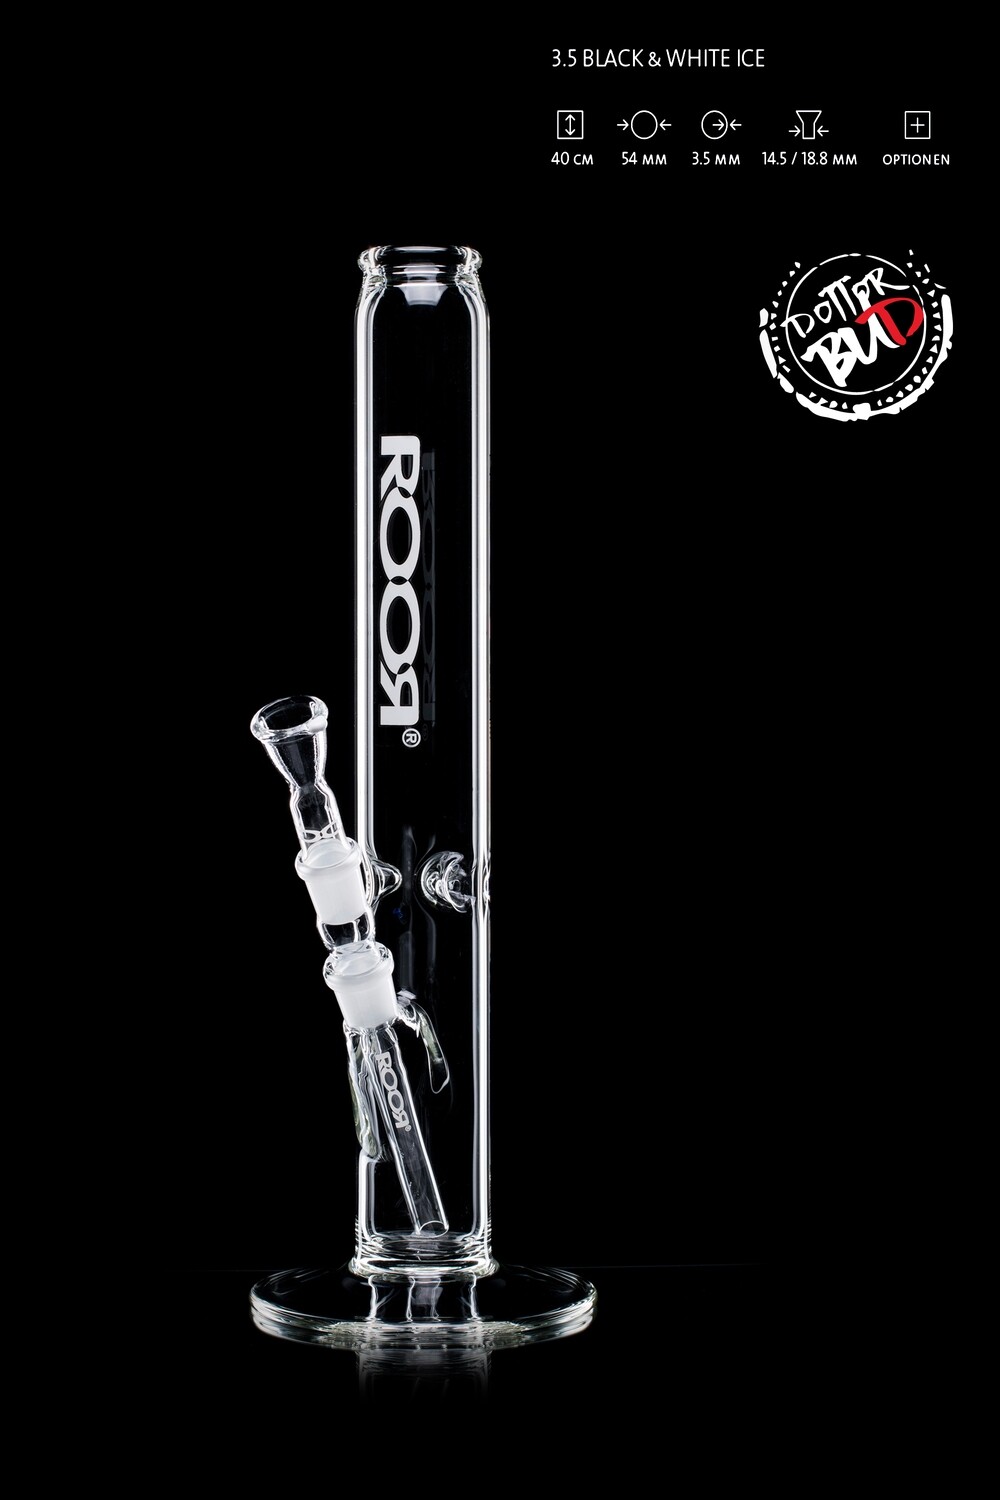 Bong Roor Black&White Ice 3.5 taglio 18.8 Altezza 40cm